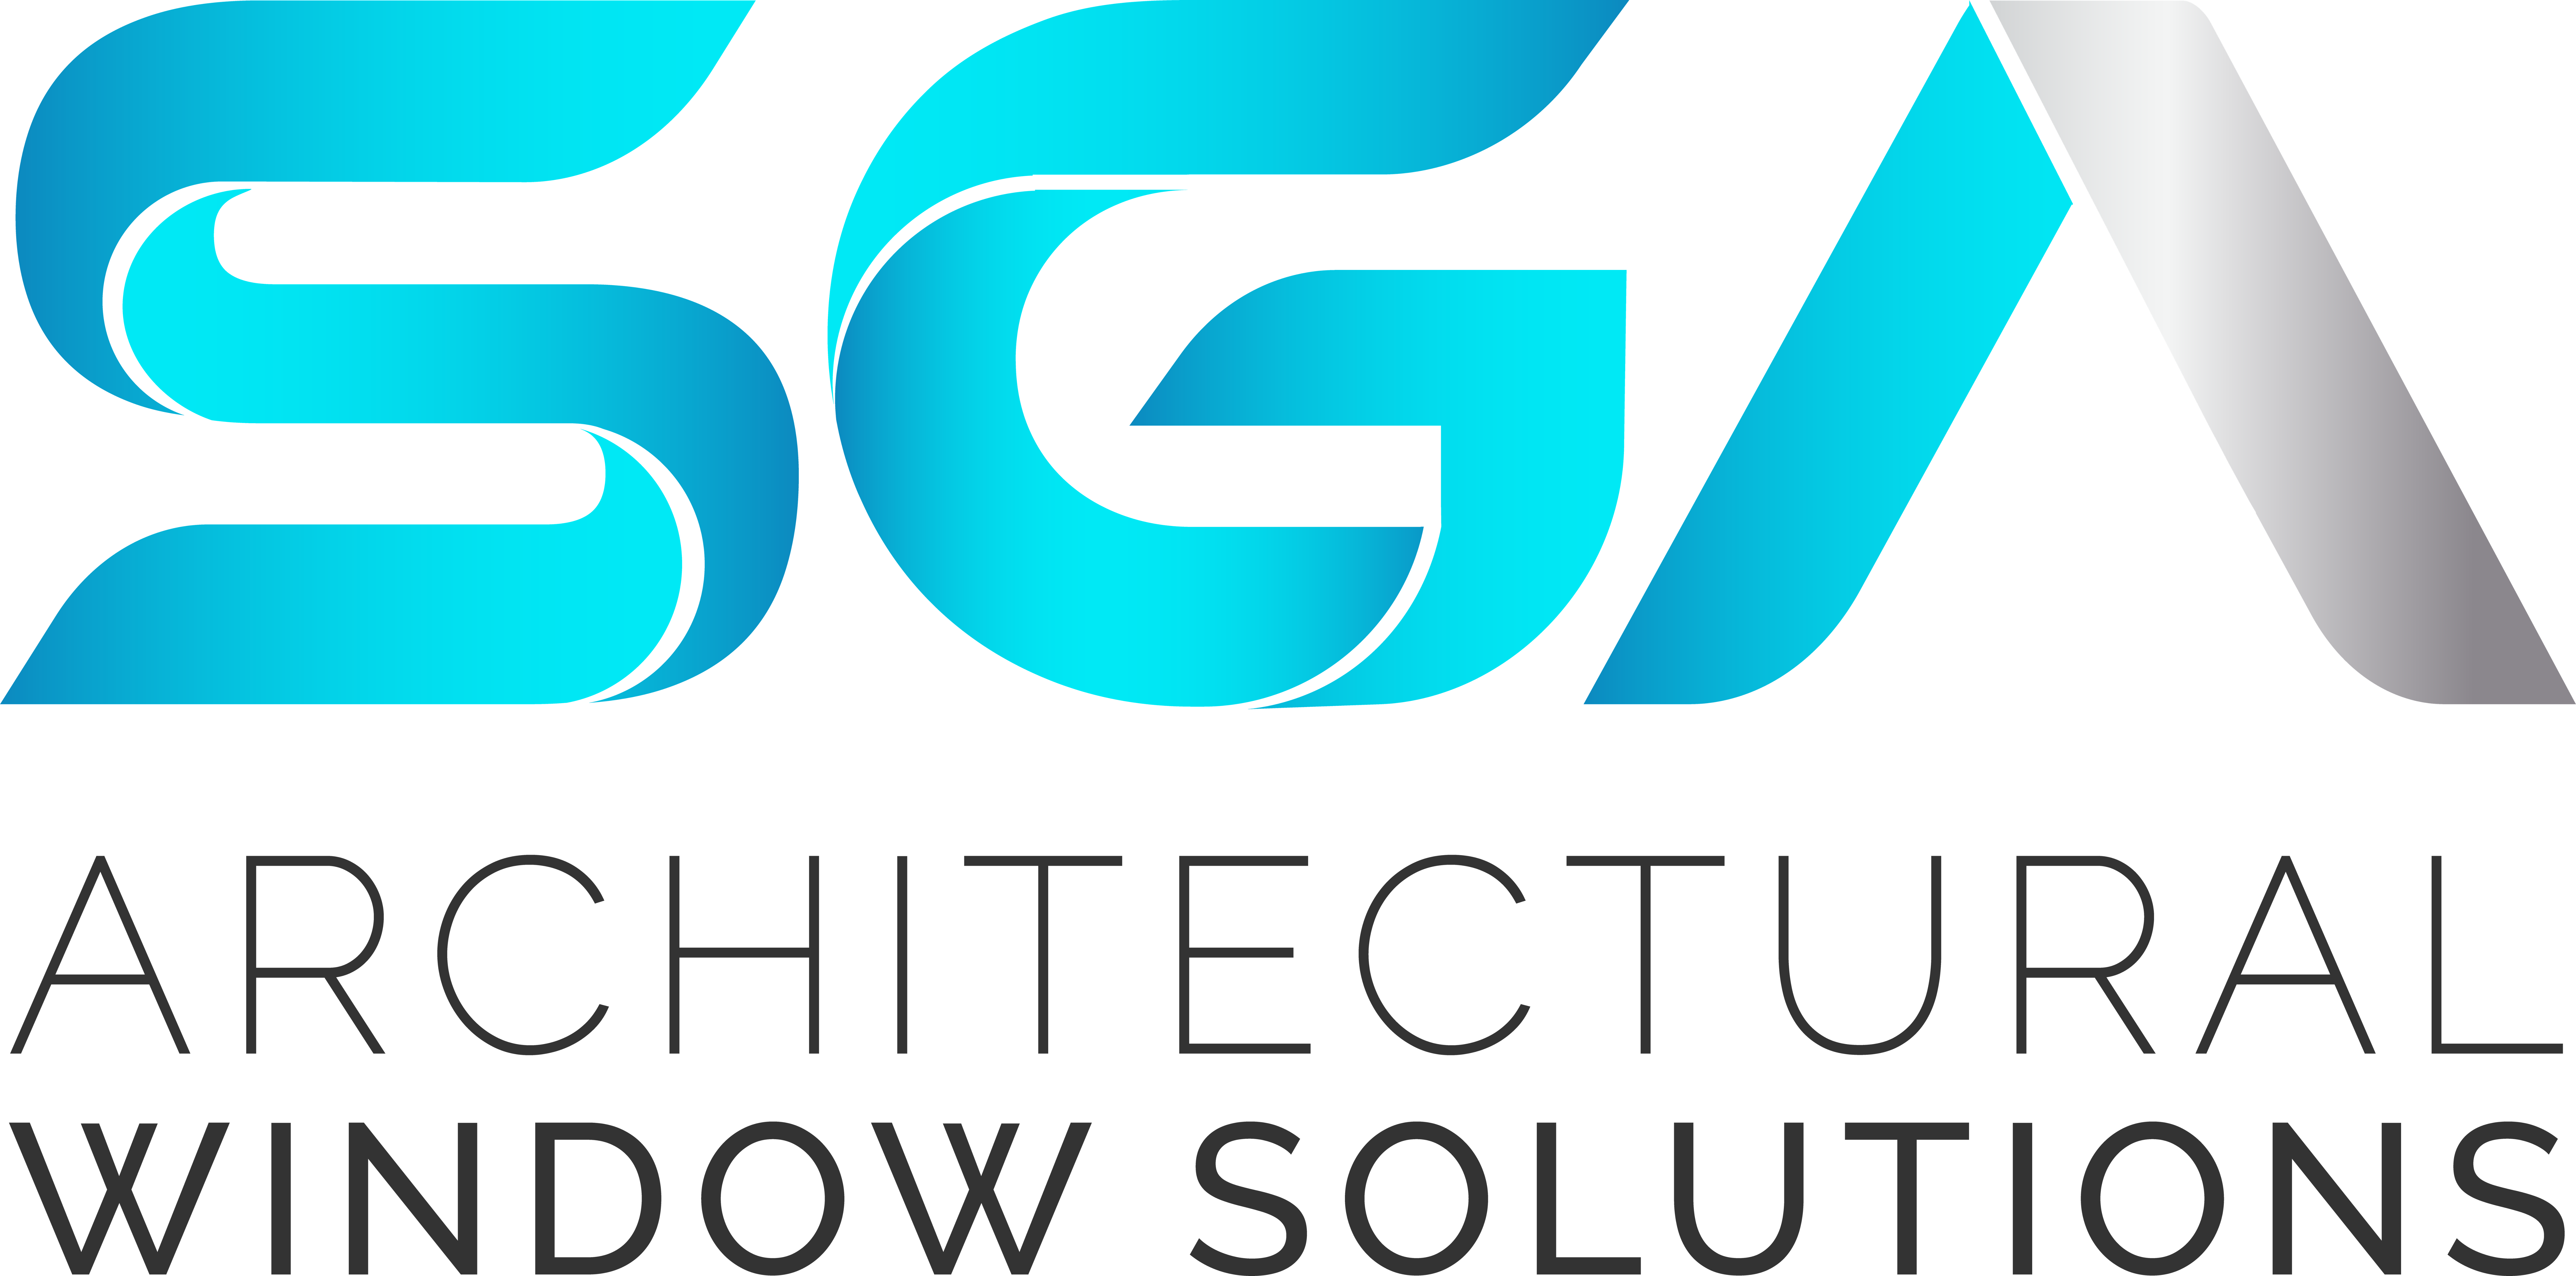 SGA Architectural Window Solutions